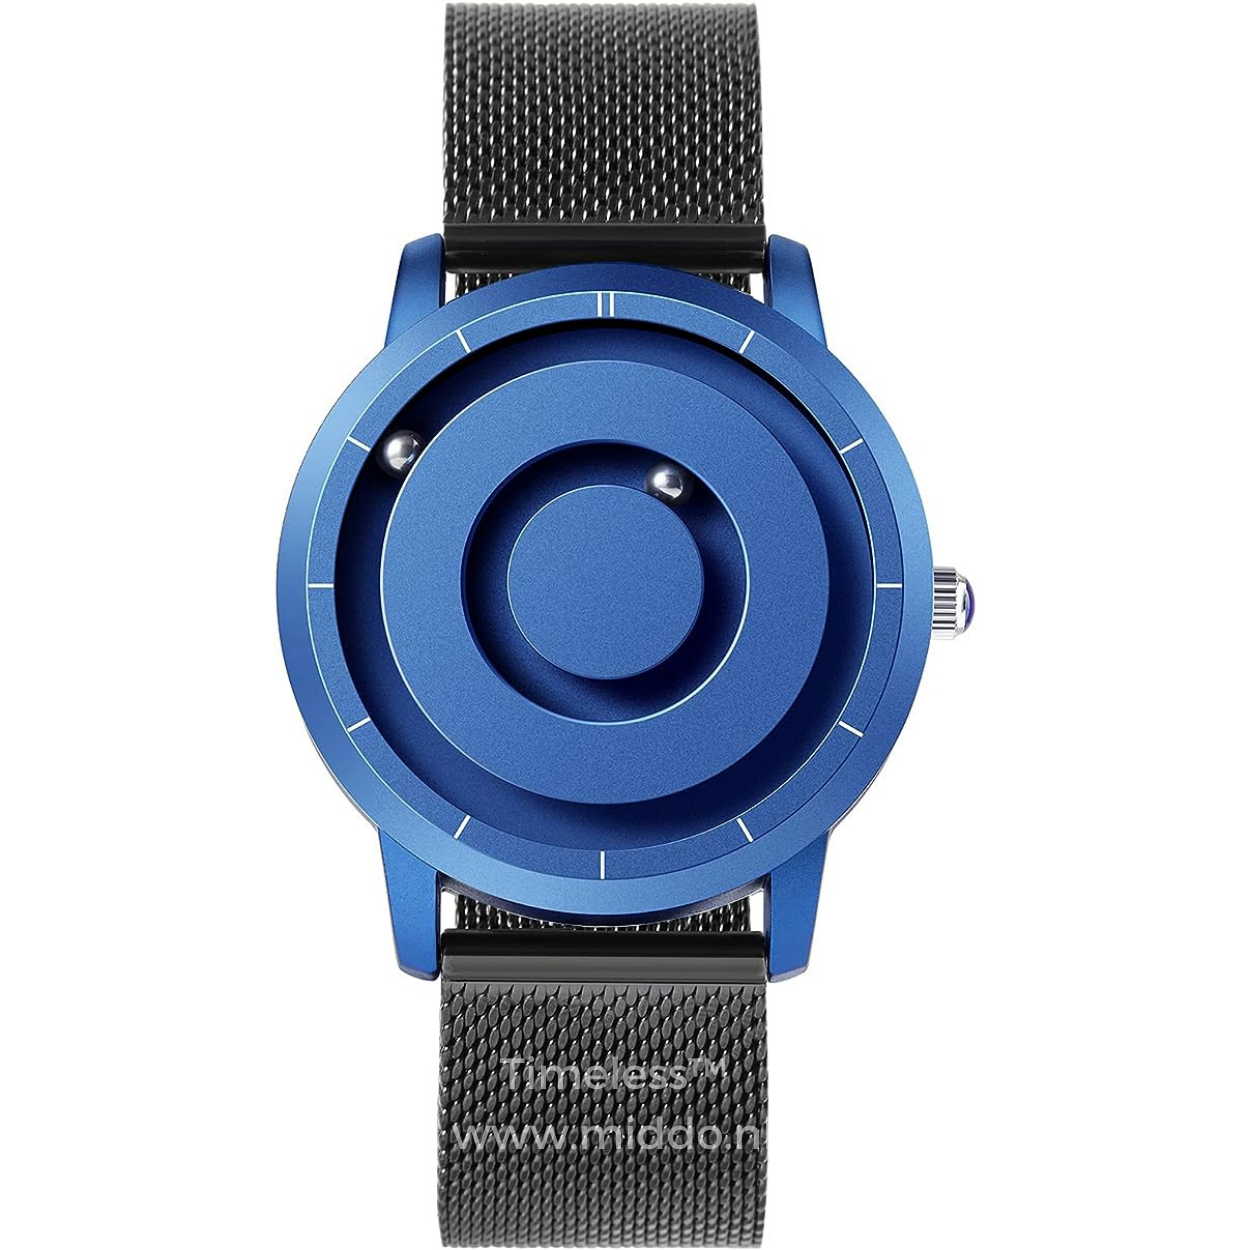 Blauw horloge met zwarte meshband en minimalistisch ontwerp.